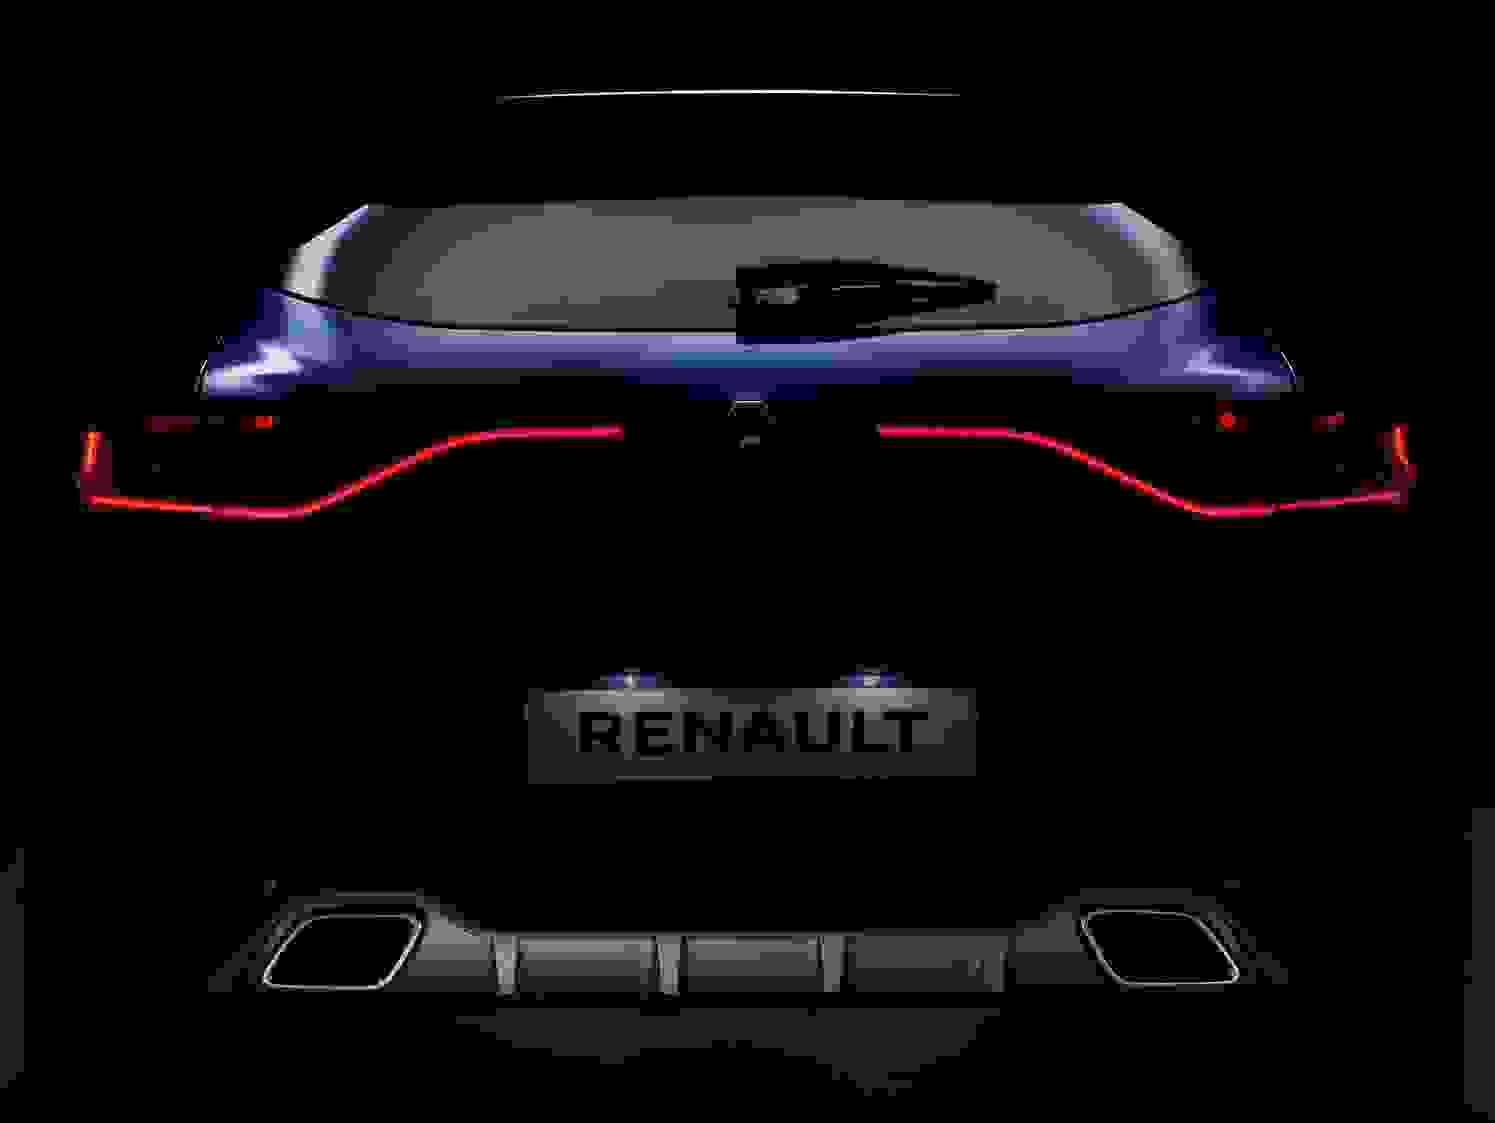 Renault Megane 2018 Interior Baglygter Led Lys Laekker Model